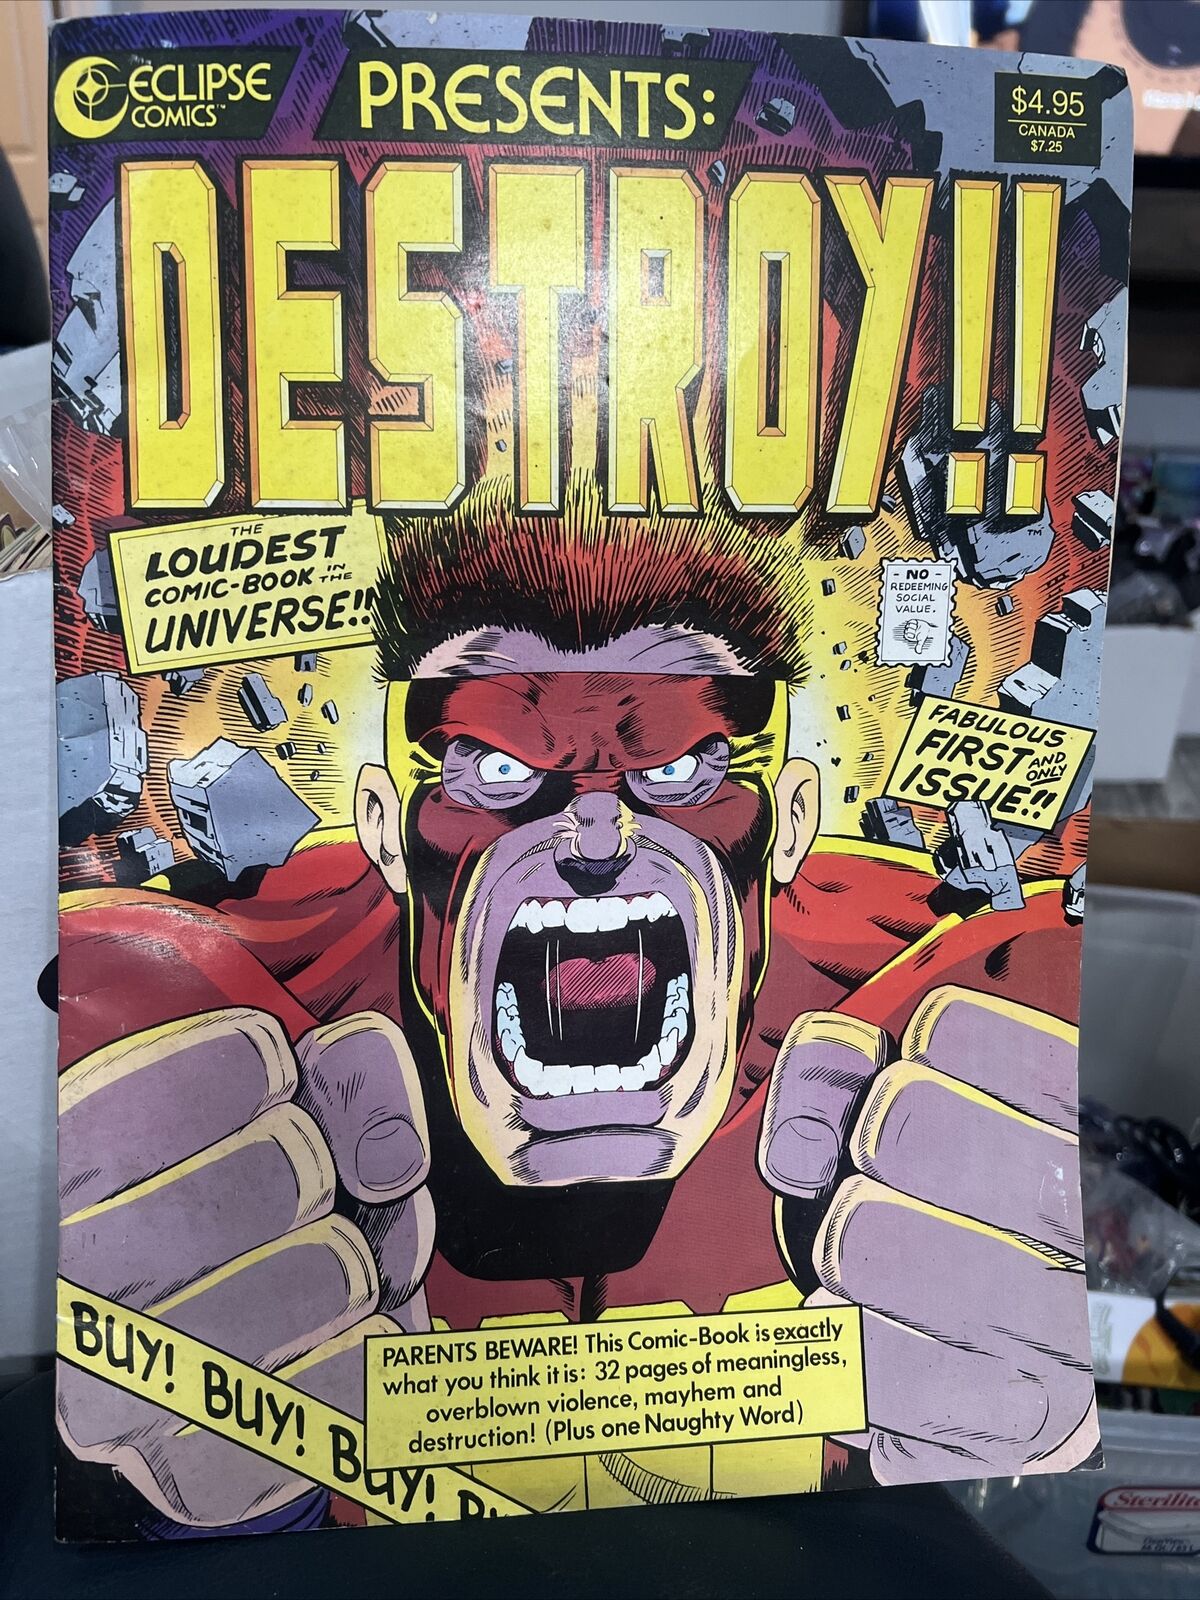 Eclipse Comics Presents DESTROY McCloud Zot